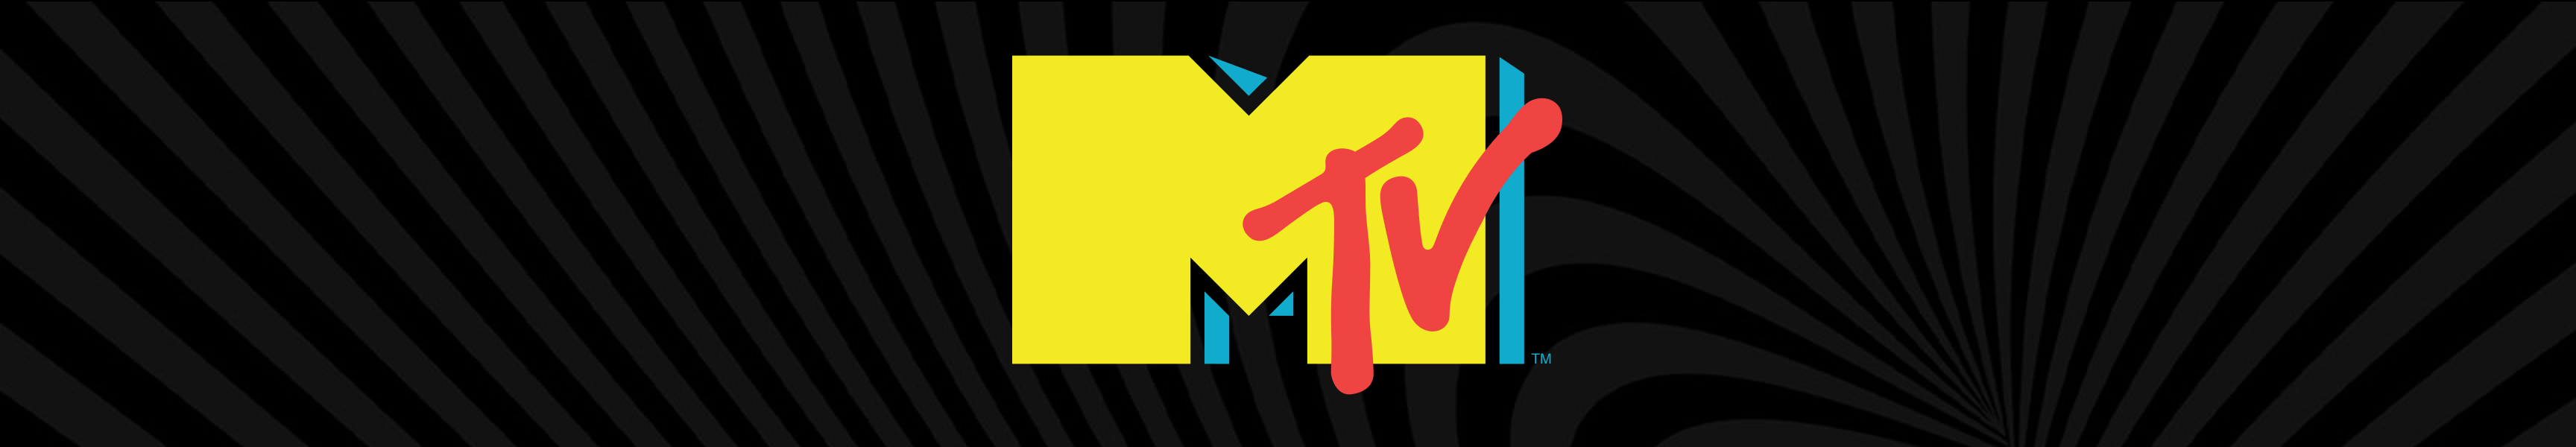 Tops de cultures MTV